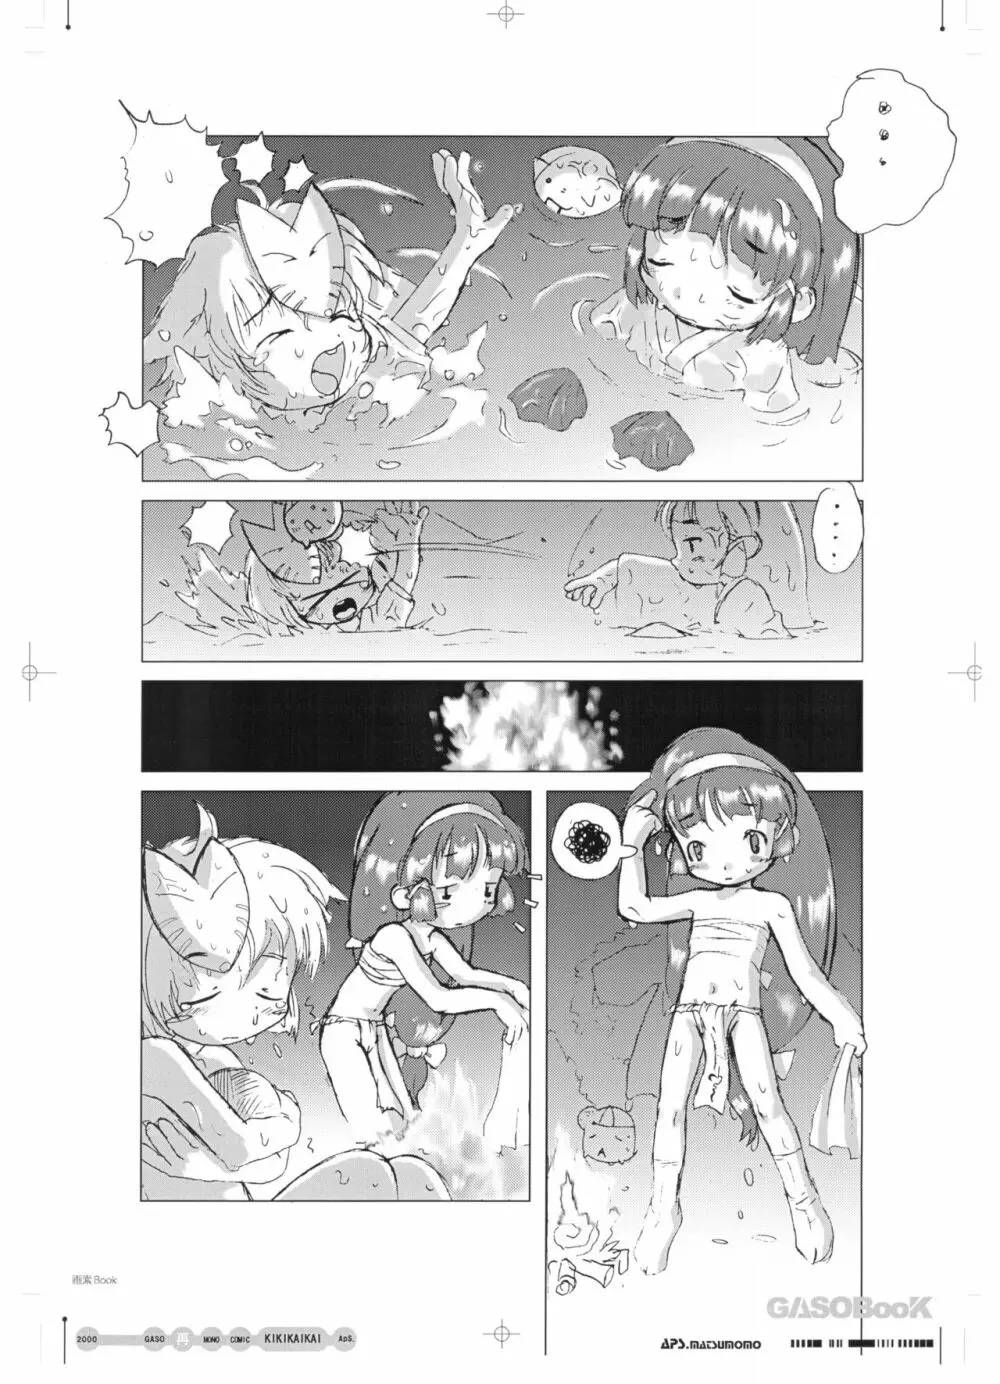 画素BooK 原稿用紙 キッズアニメトロニカズ -0208 - page27